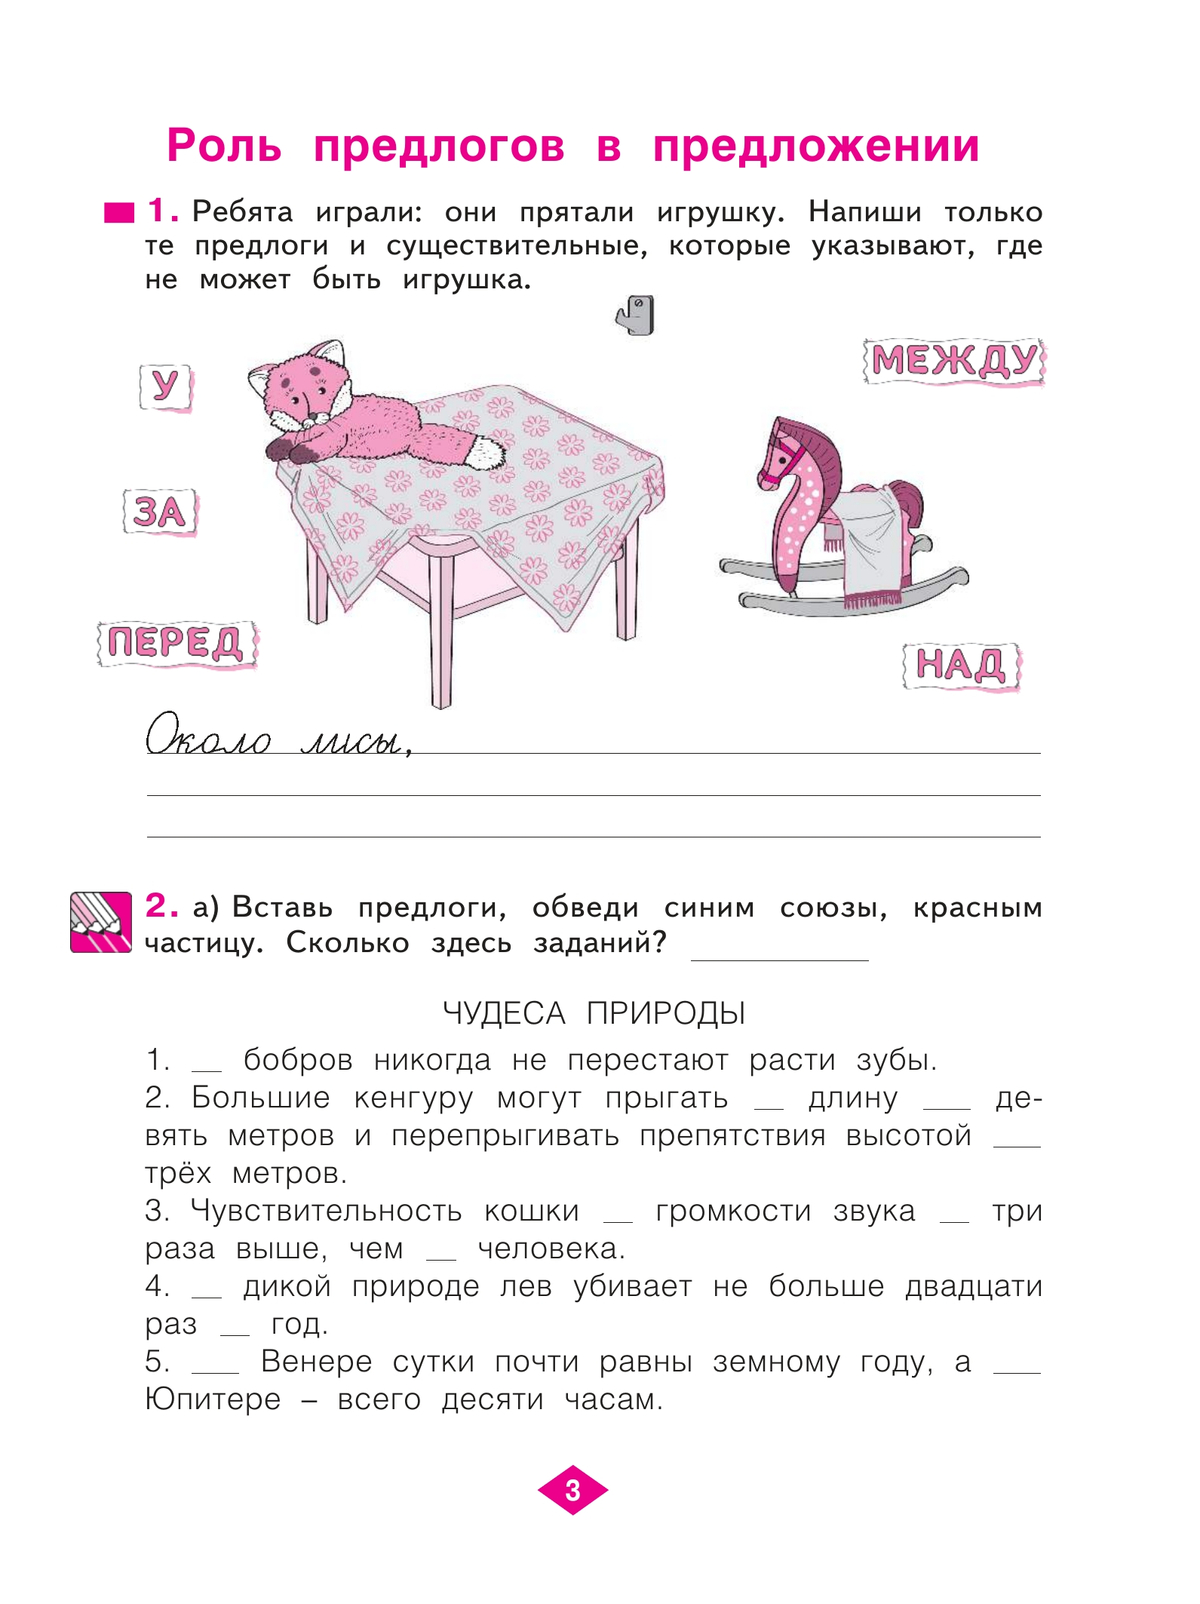 Русский язык. Рабочая тетрадь. 3 класс. В 4-х частях. Часть 2 2